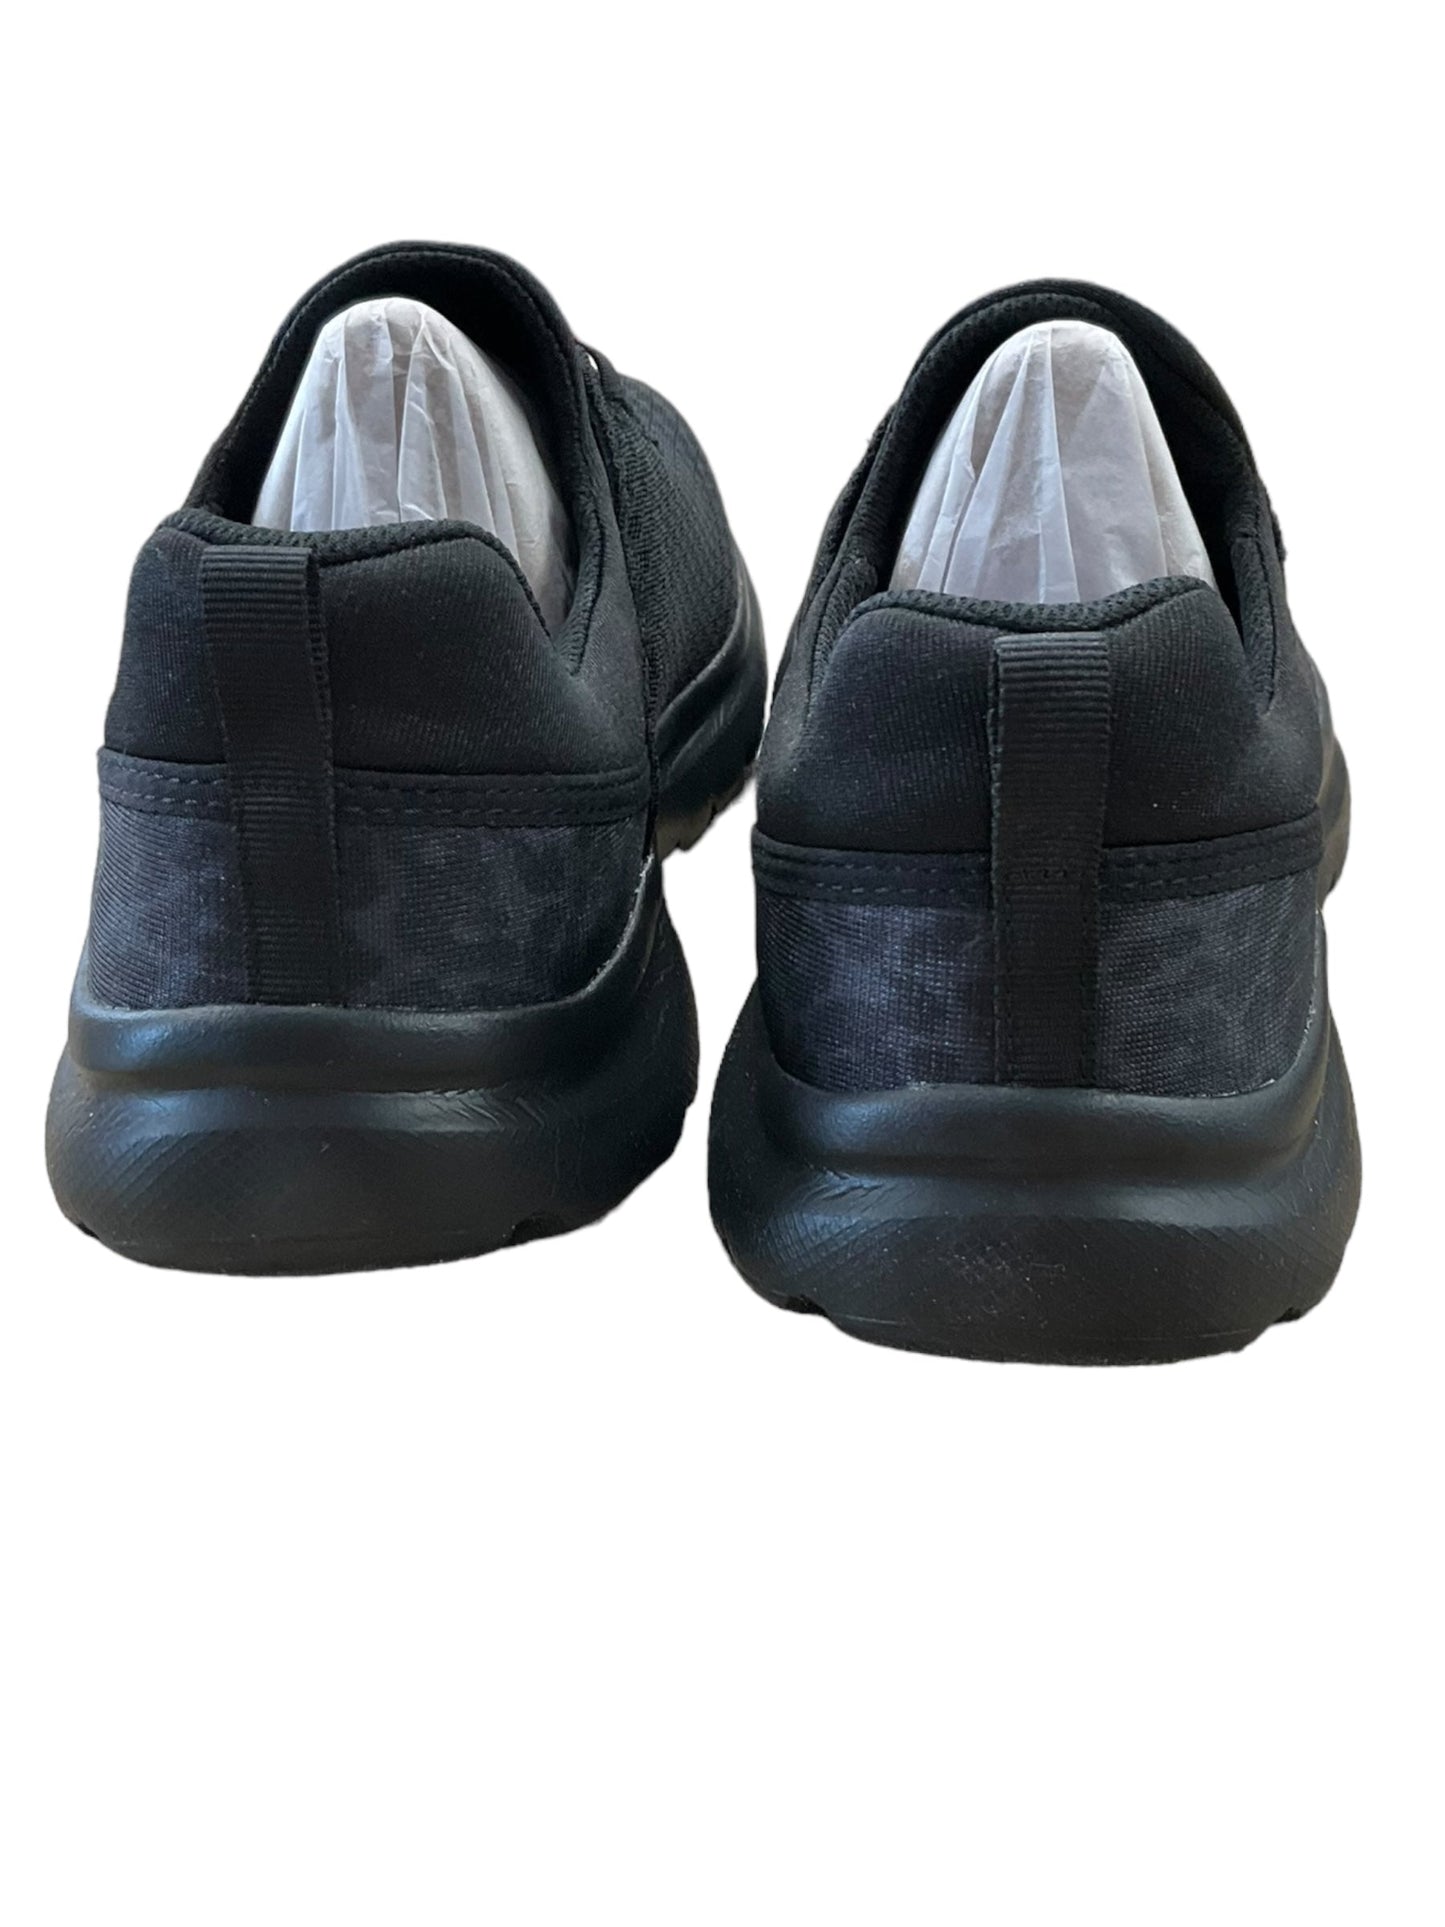 Black Shoes Athletic Ryka, Size 10